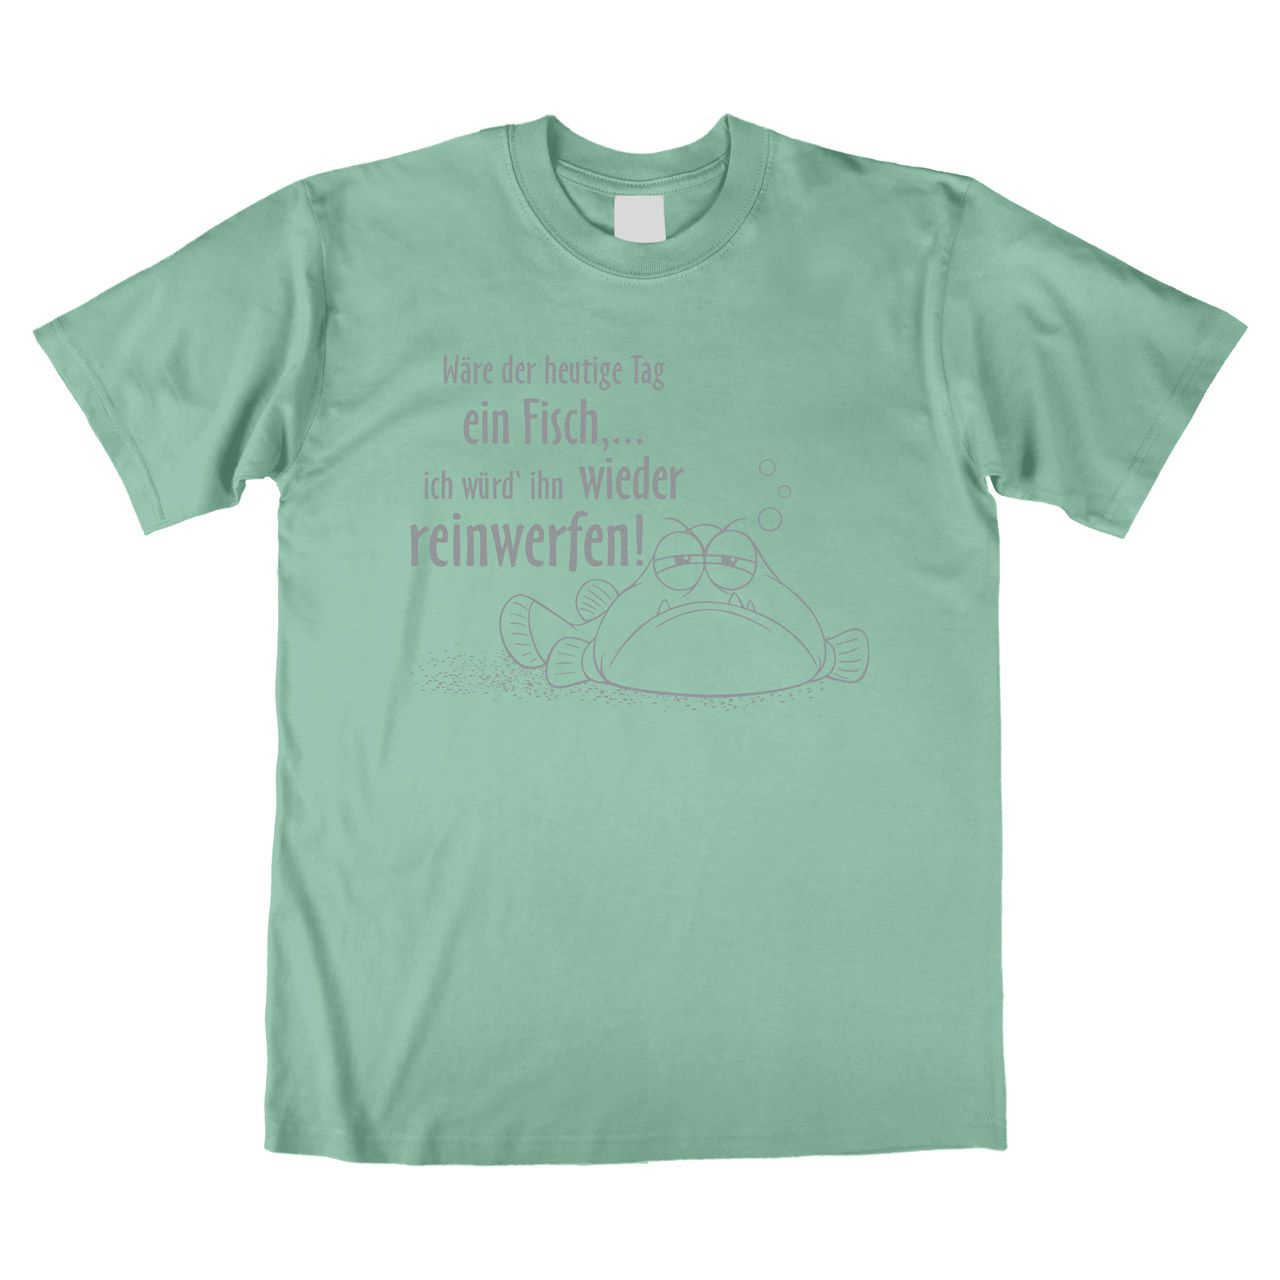 Wäre der heutige Tag ein Fisch Unisex T-Shirt mint Medium